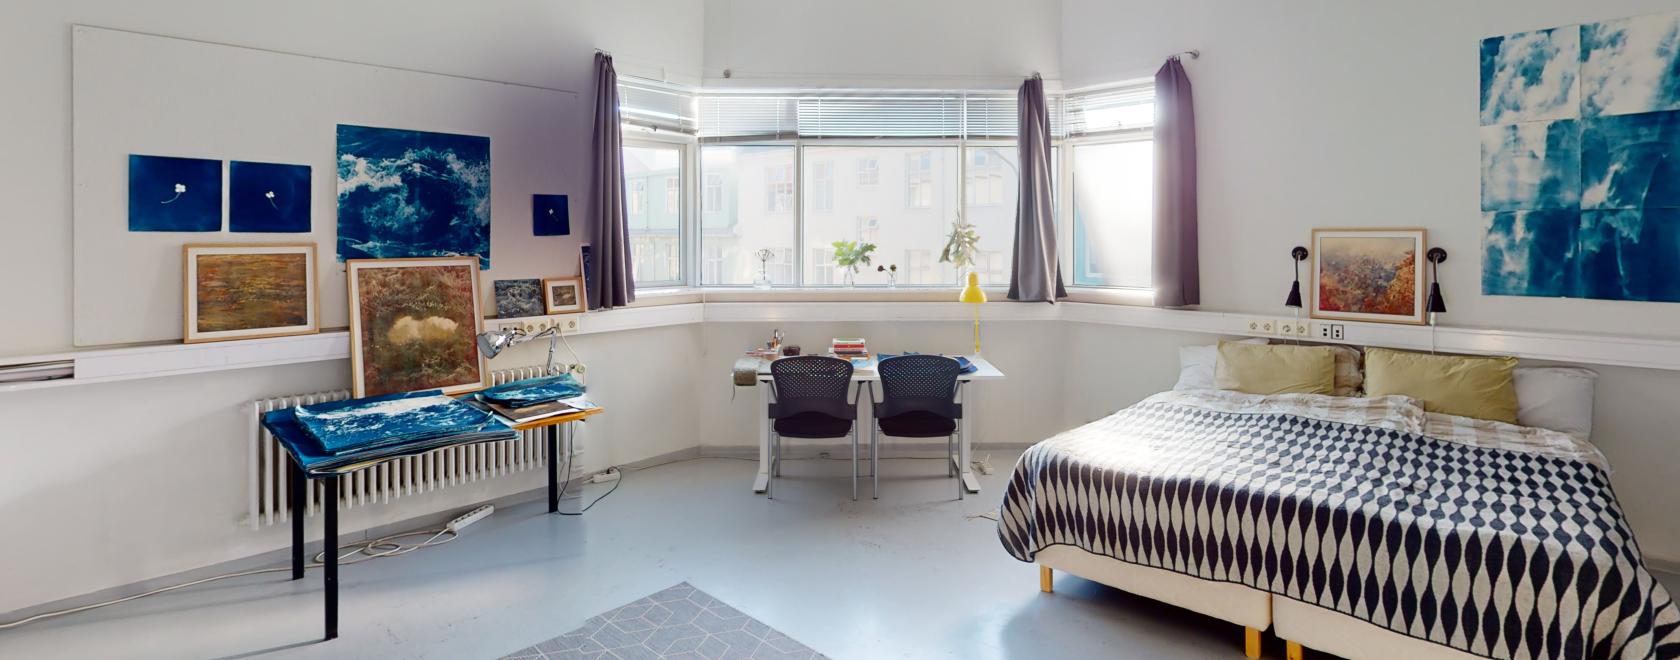 Kuva vaaleasta huoneesta, jossa on leveä ikkuna, sänky ja kaksi pöytää.